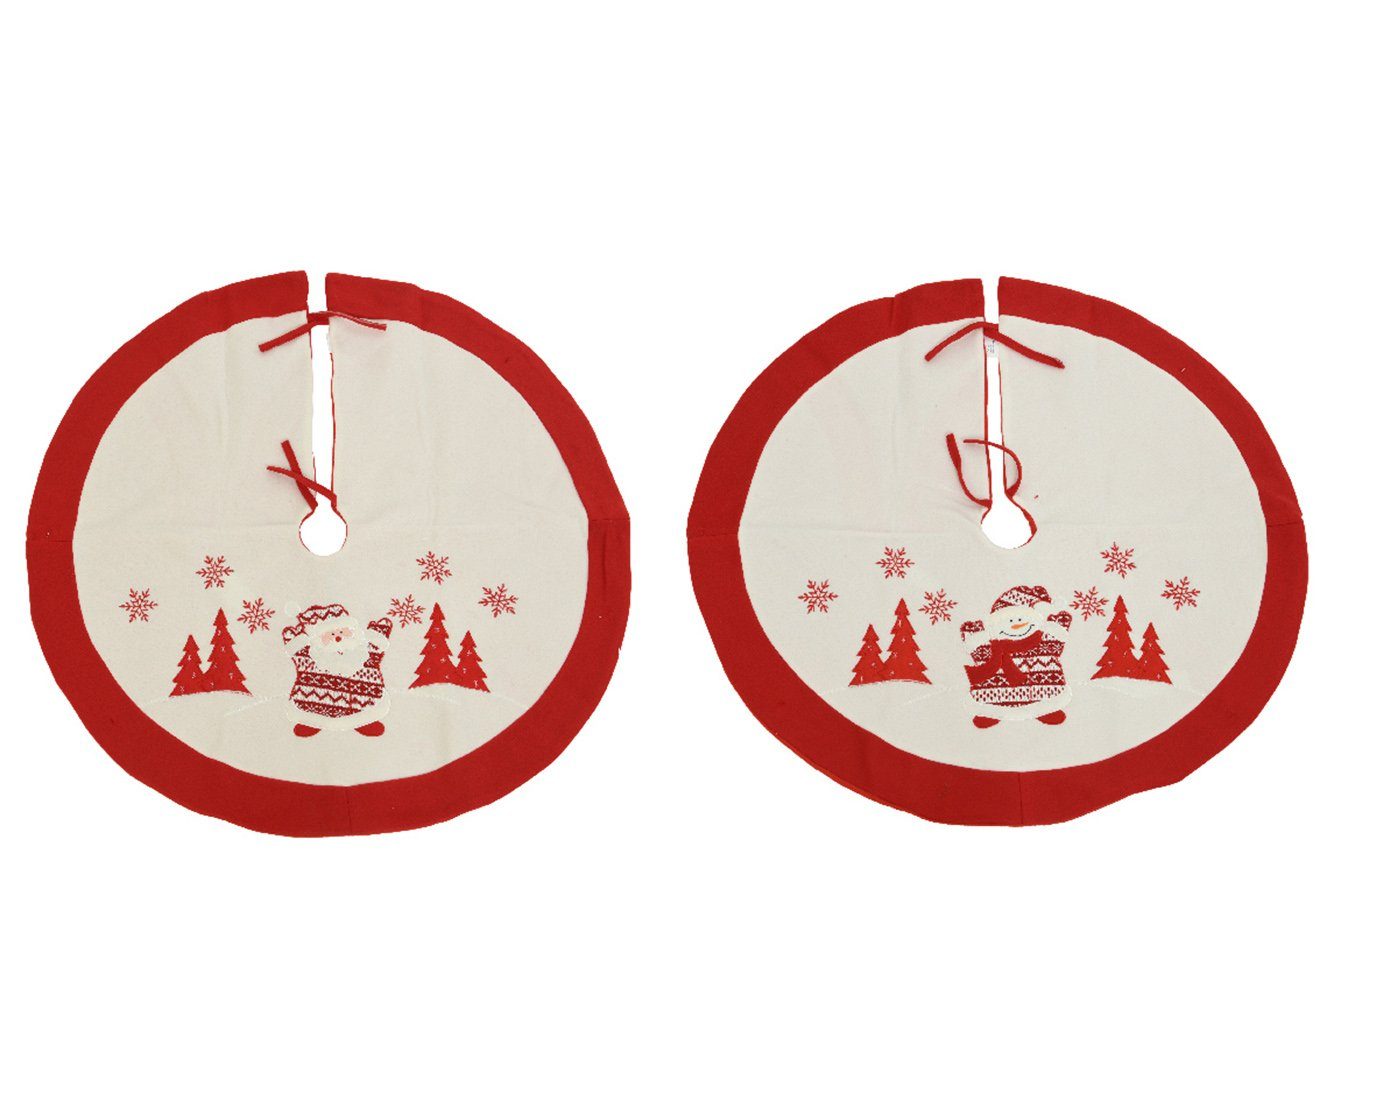 Decoris season decorations Weihnachtsbaumdecke, Weihnachtsbaumdecke Filz mit Schneemann / Santa 90cm rot 1 Stück sort.